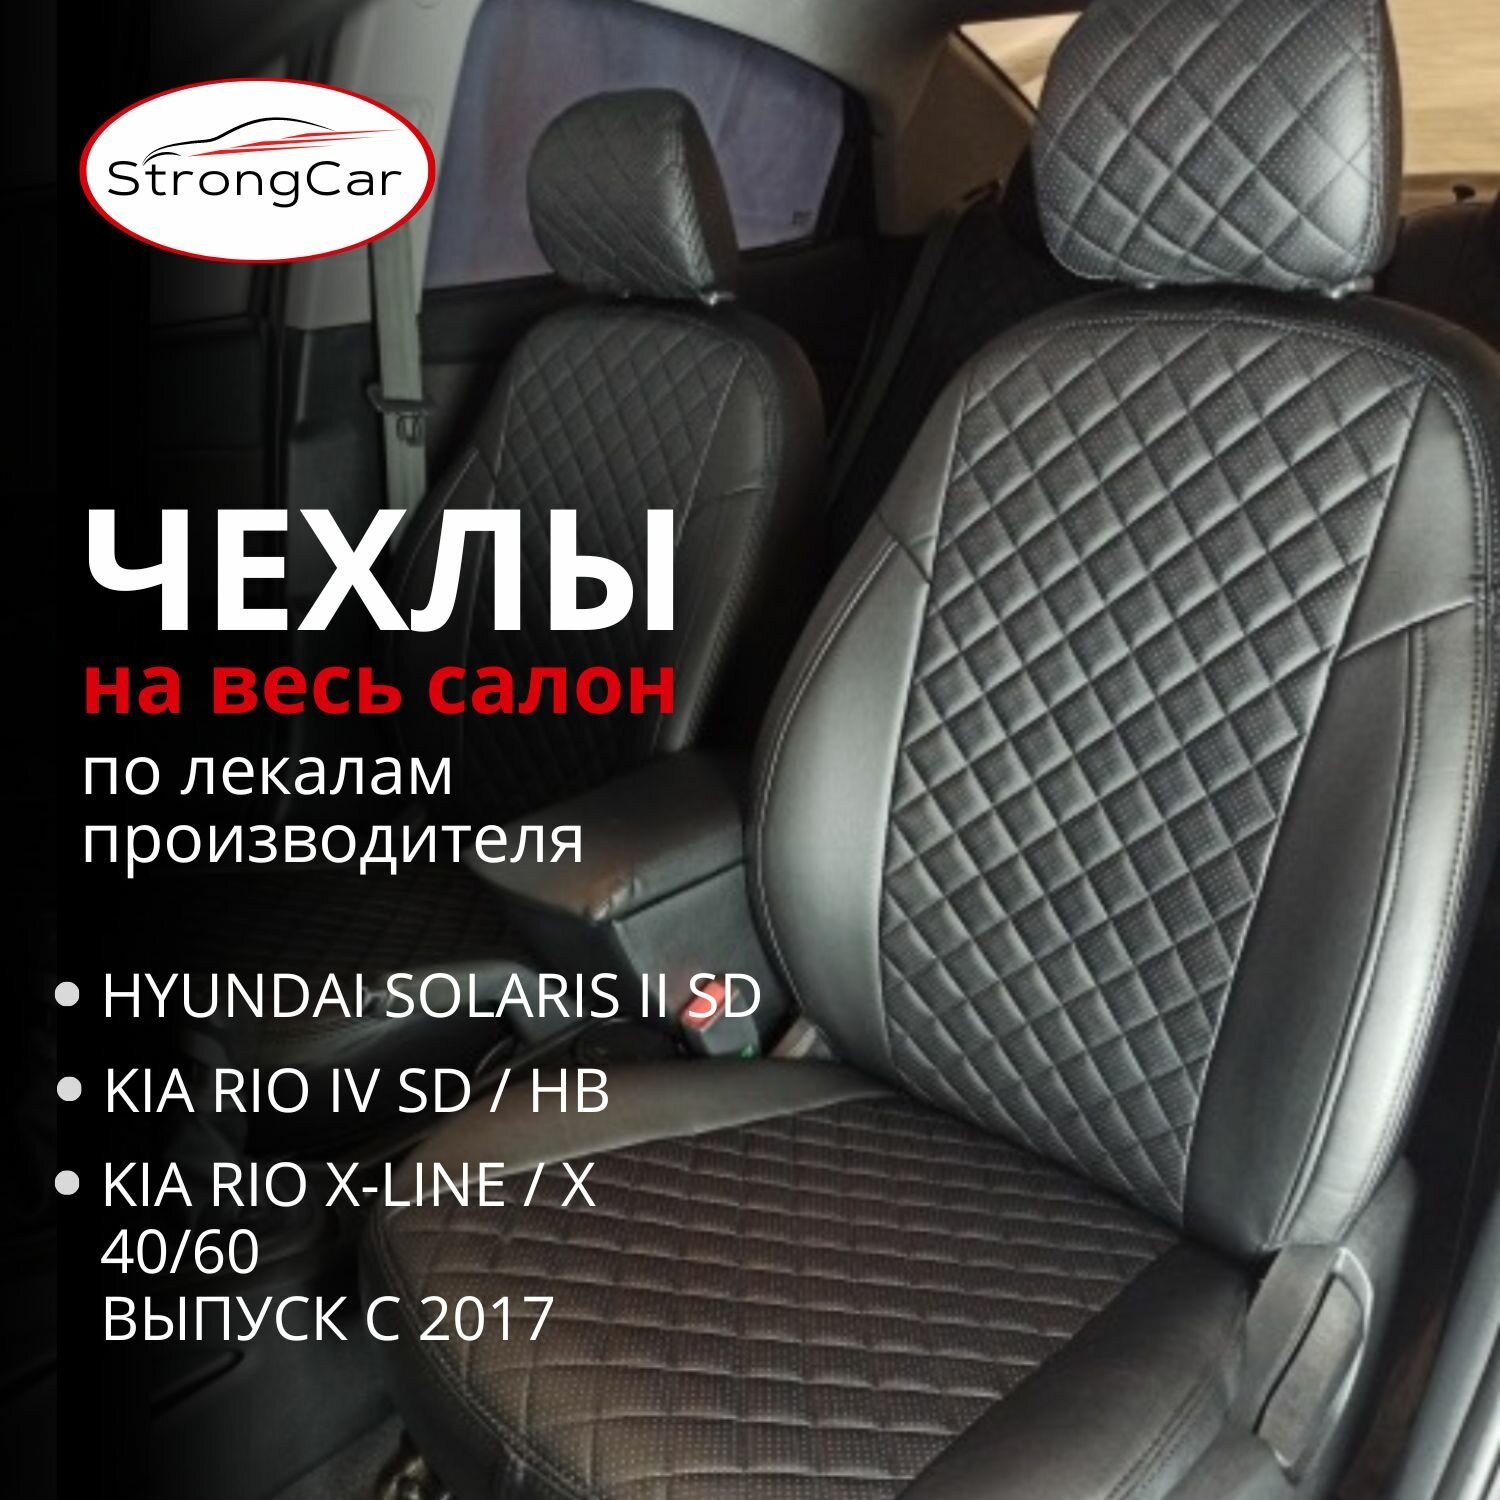 Комплект чехлов на сиденья автомобиля Hyundai Solaris 2 и Kia Rio 4